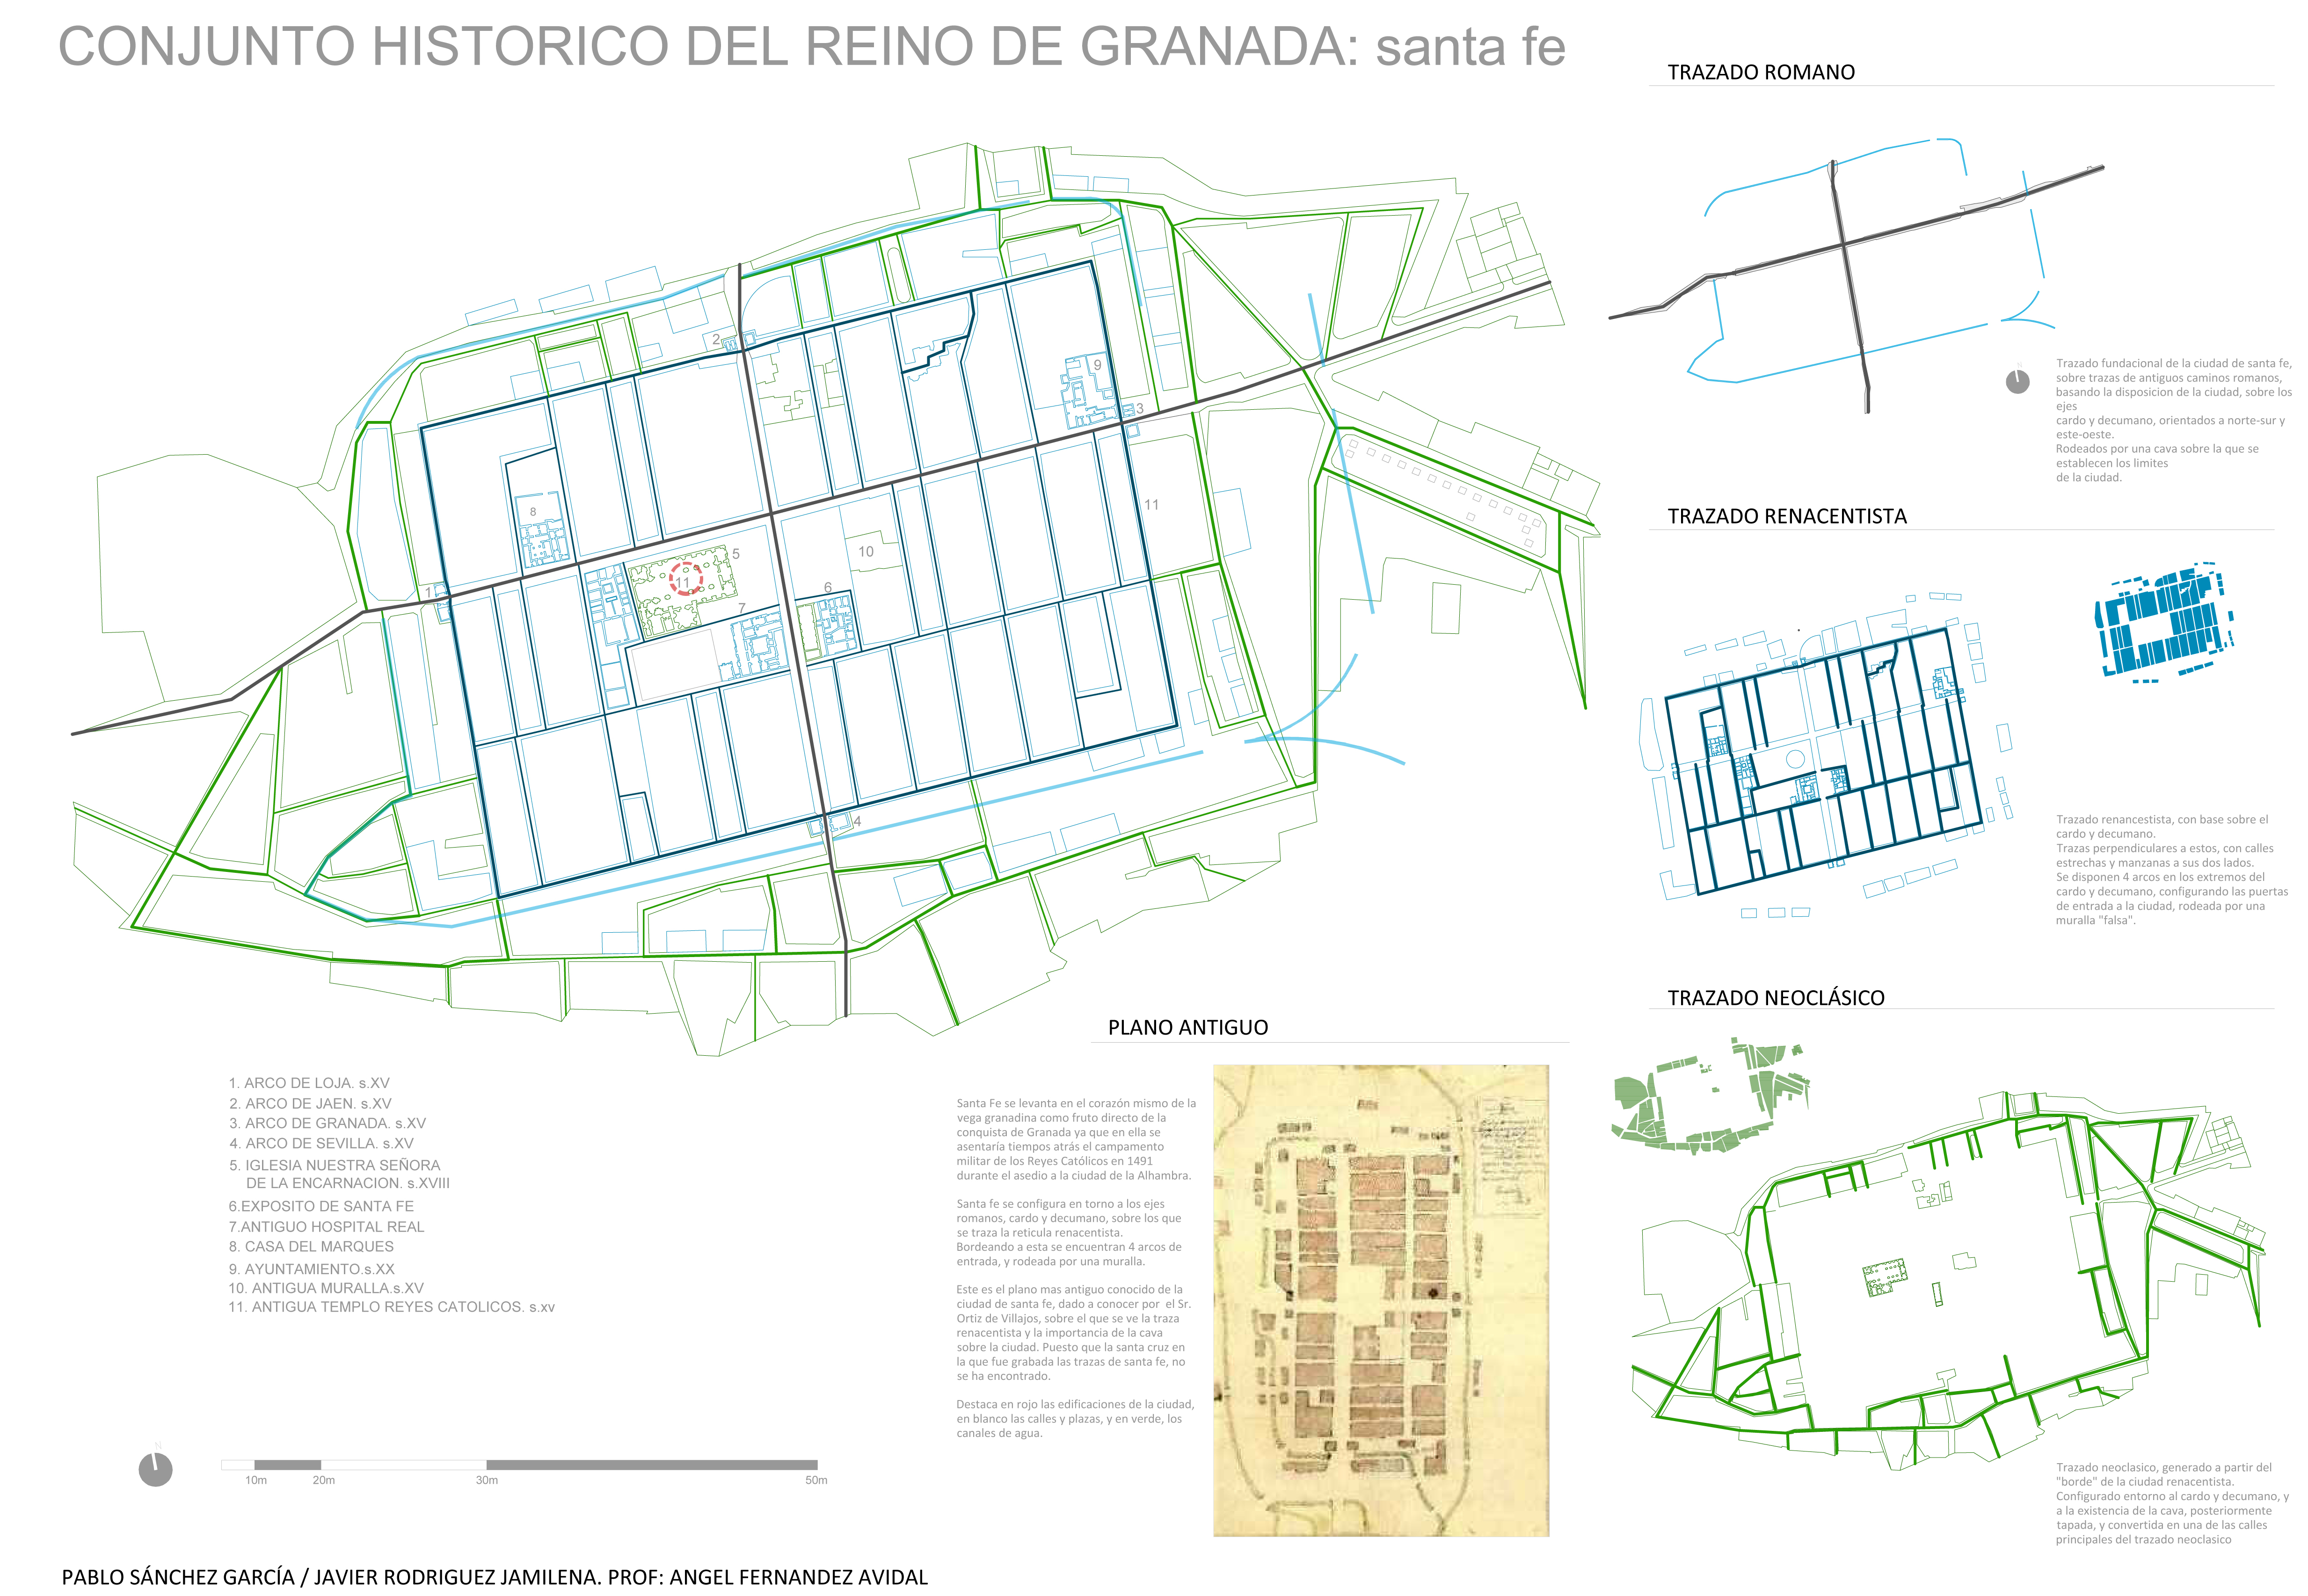 Conjunto historico: Santa Fe. Estratos historicos.